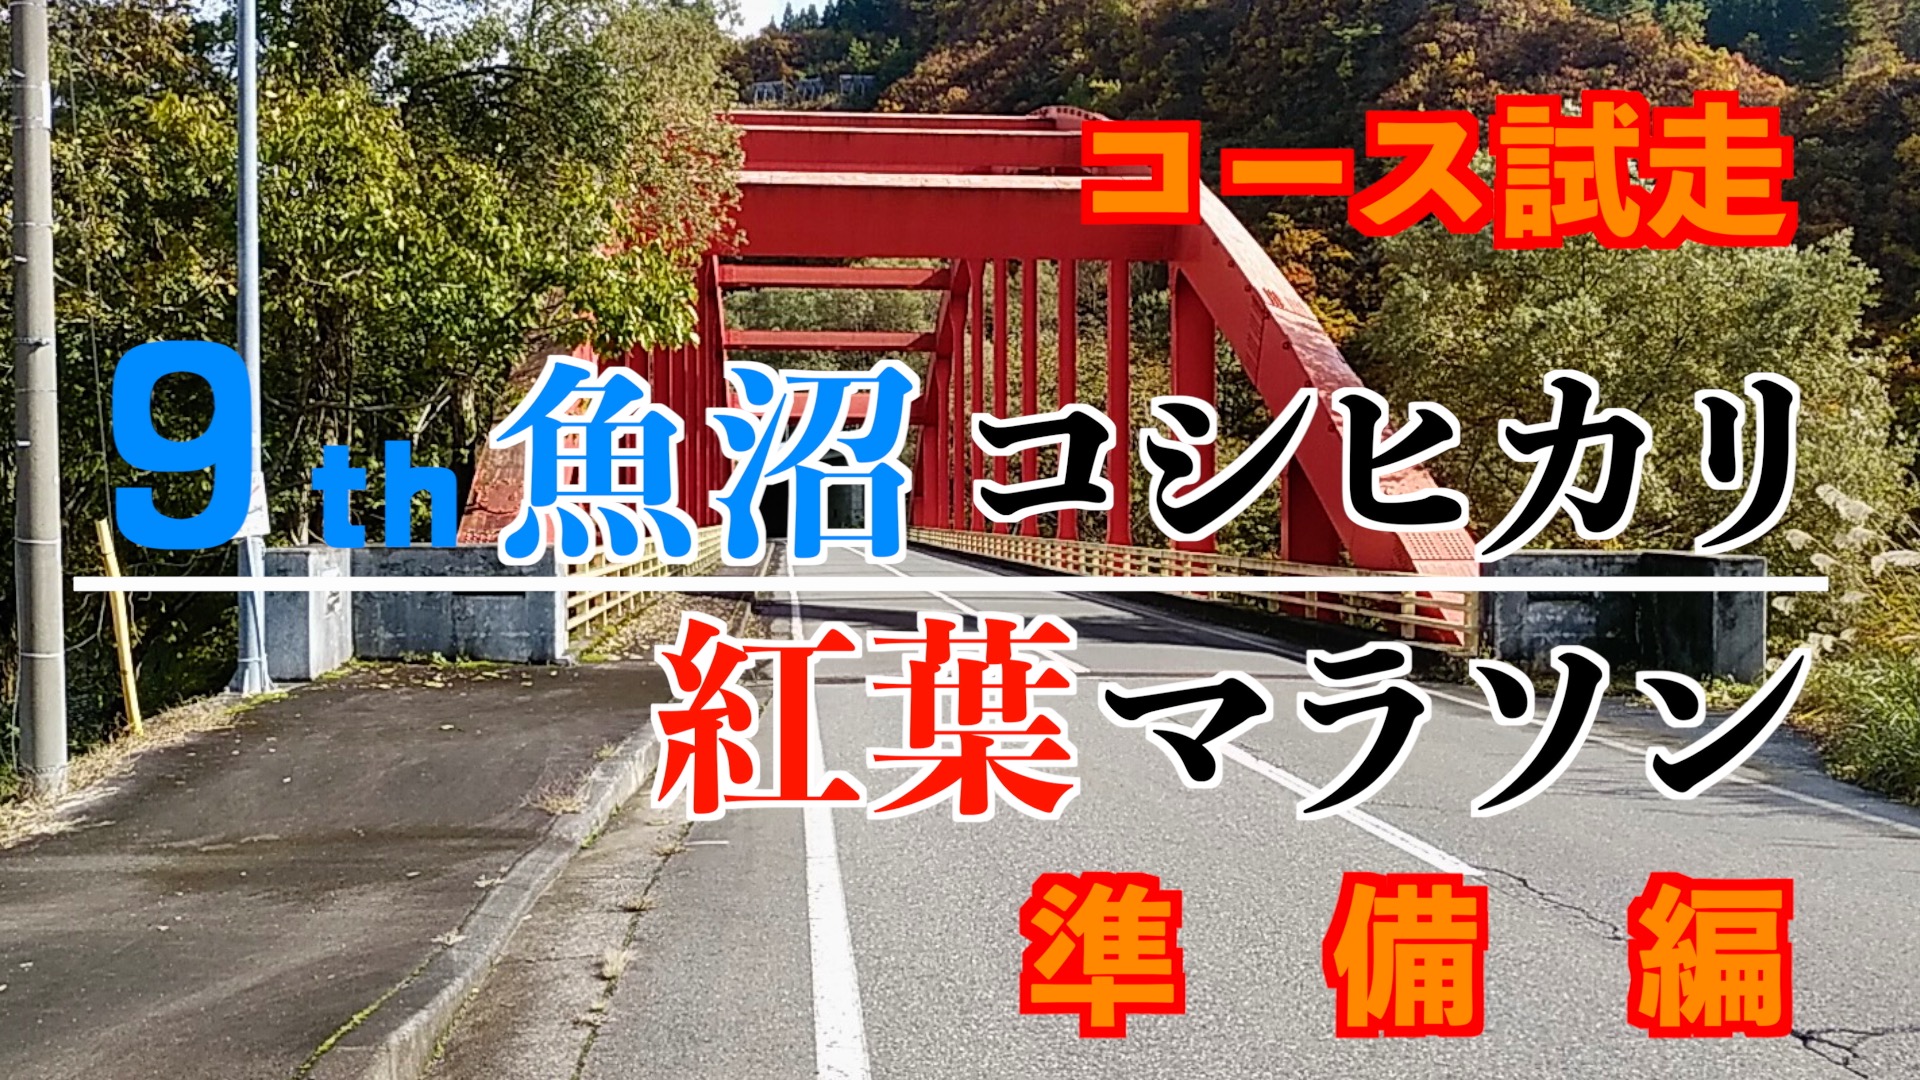 「魚沼コシヒカリ紅葉マラソン」のコース試走 アイキャッチ画像